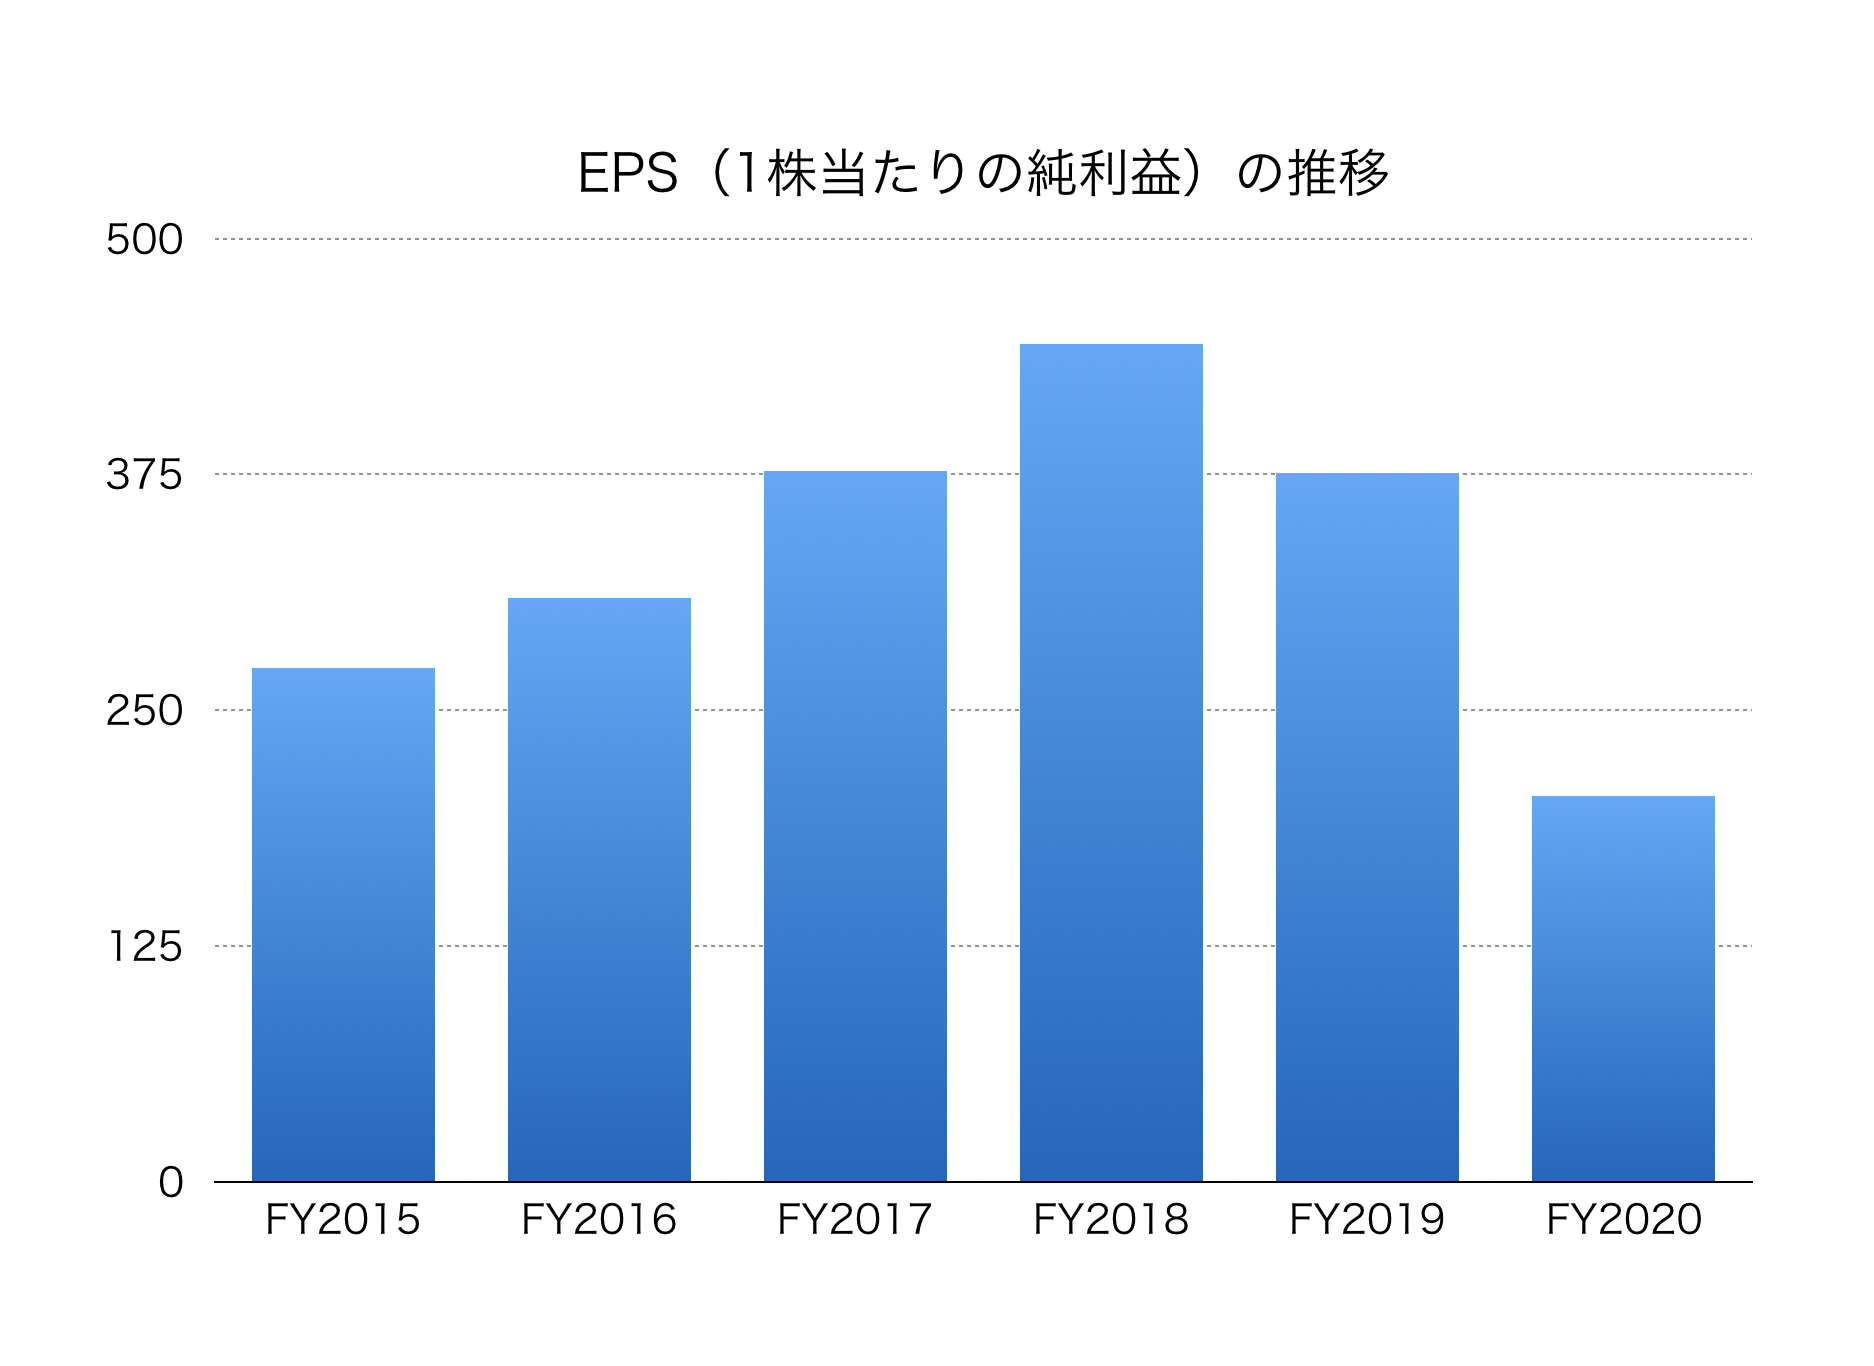 日本 電 産 の 株価